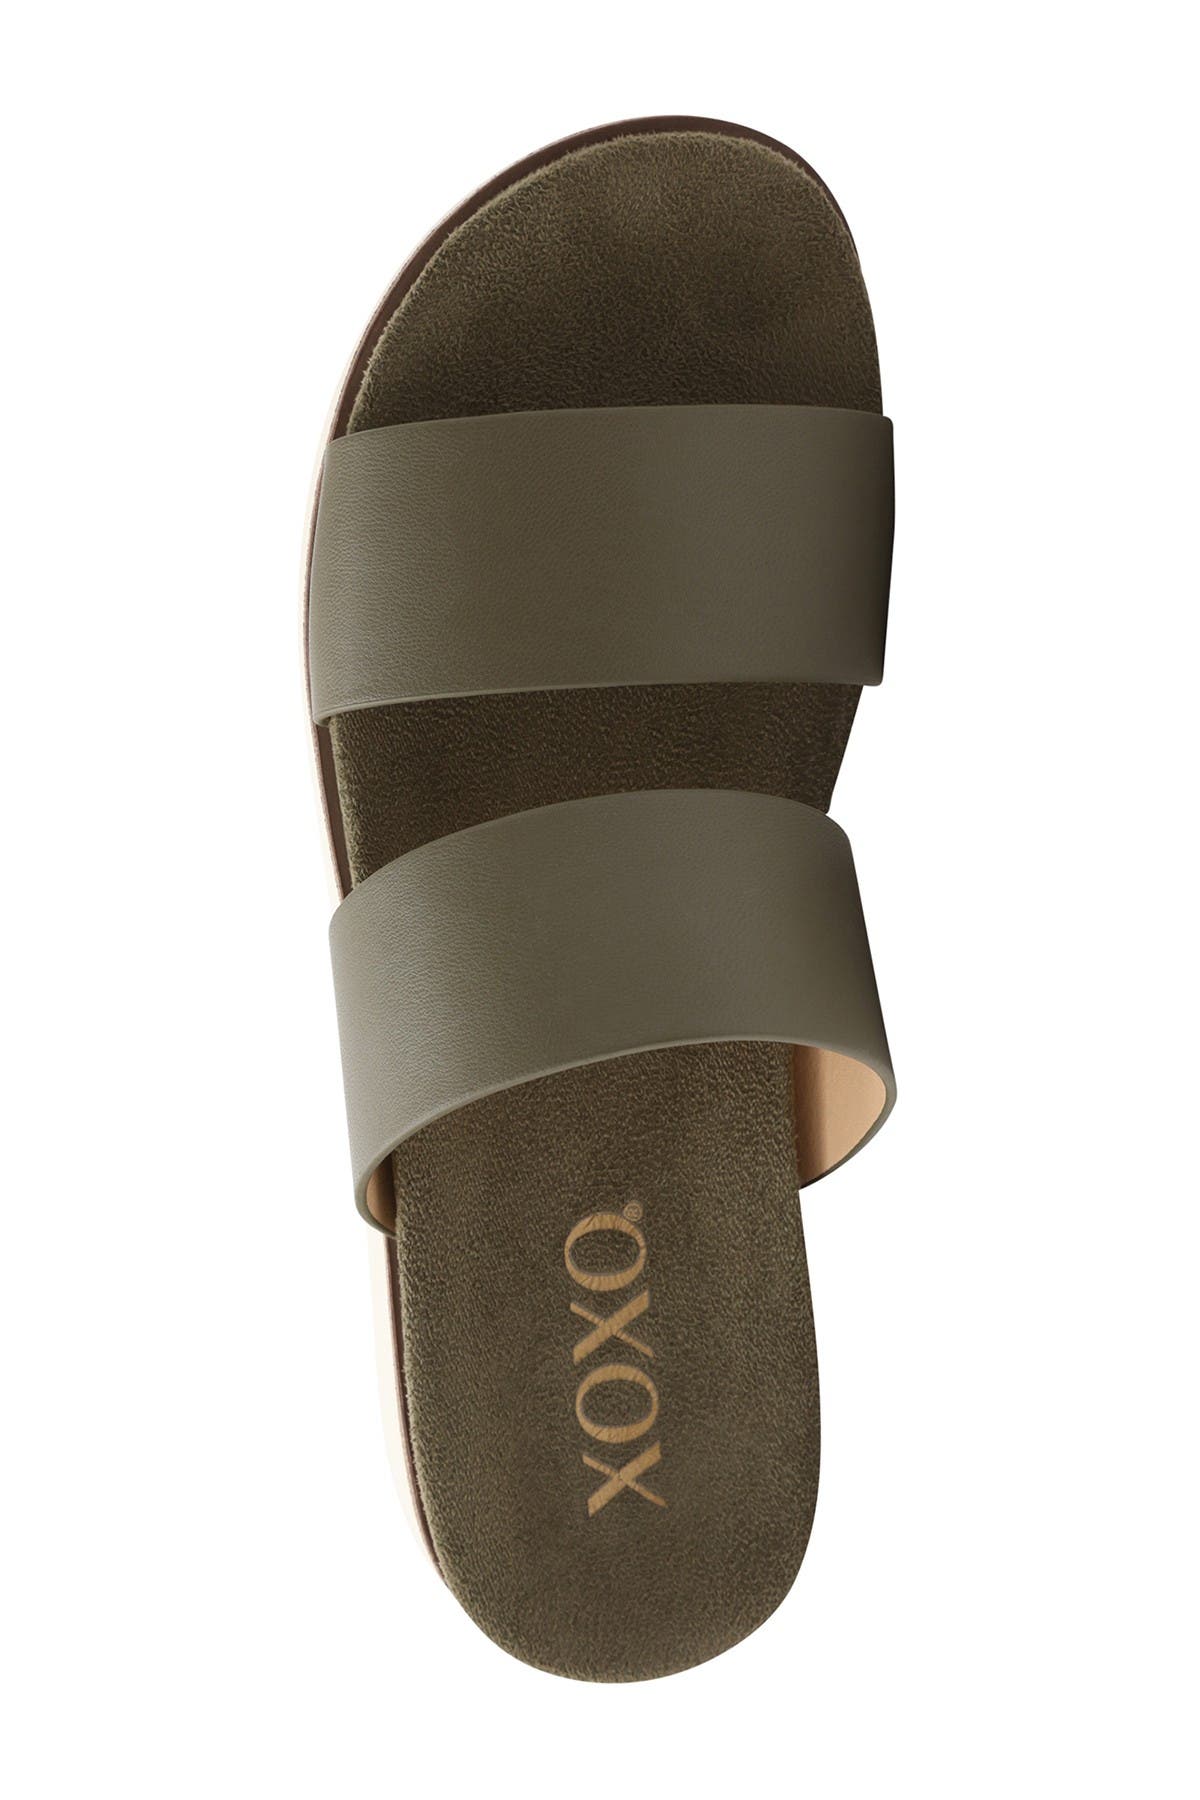 xoxo women's dylan slide sandal